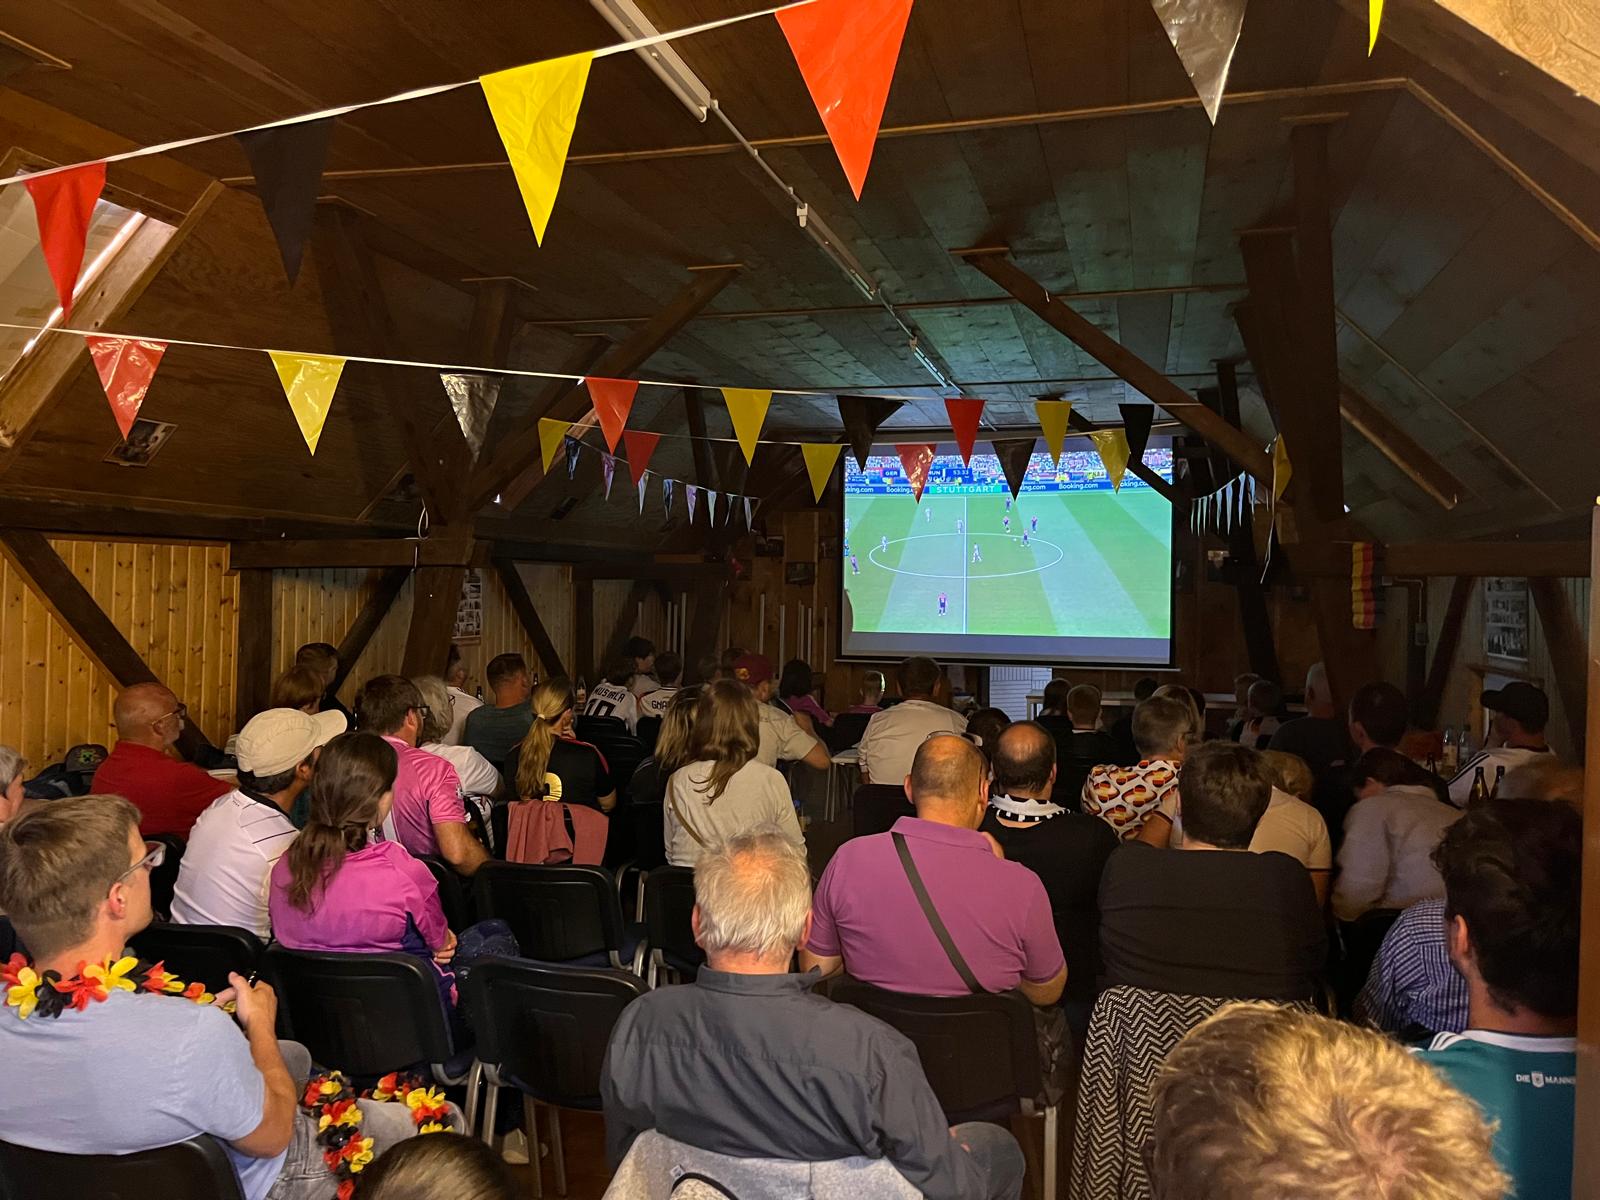 Blick in das Obergeschoss der Eigenheimerhalle in Waigolshausen während des Public Viewing. Voll besetzt mit Deutschlandfähnchen als Dekoration. Blick auf die Leinwand, die das Fußballspiel zeigt.